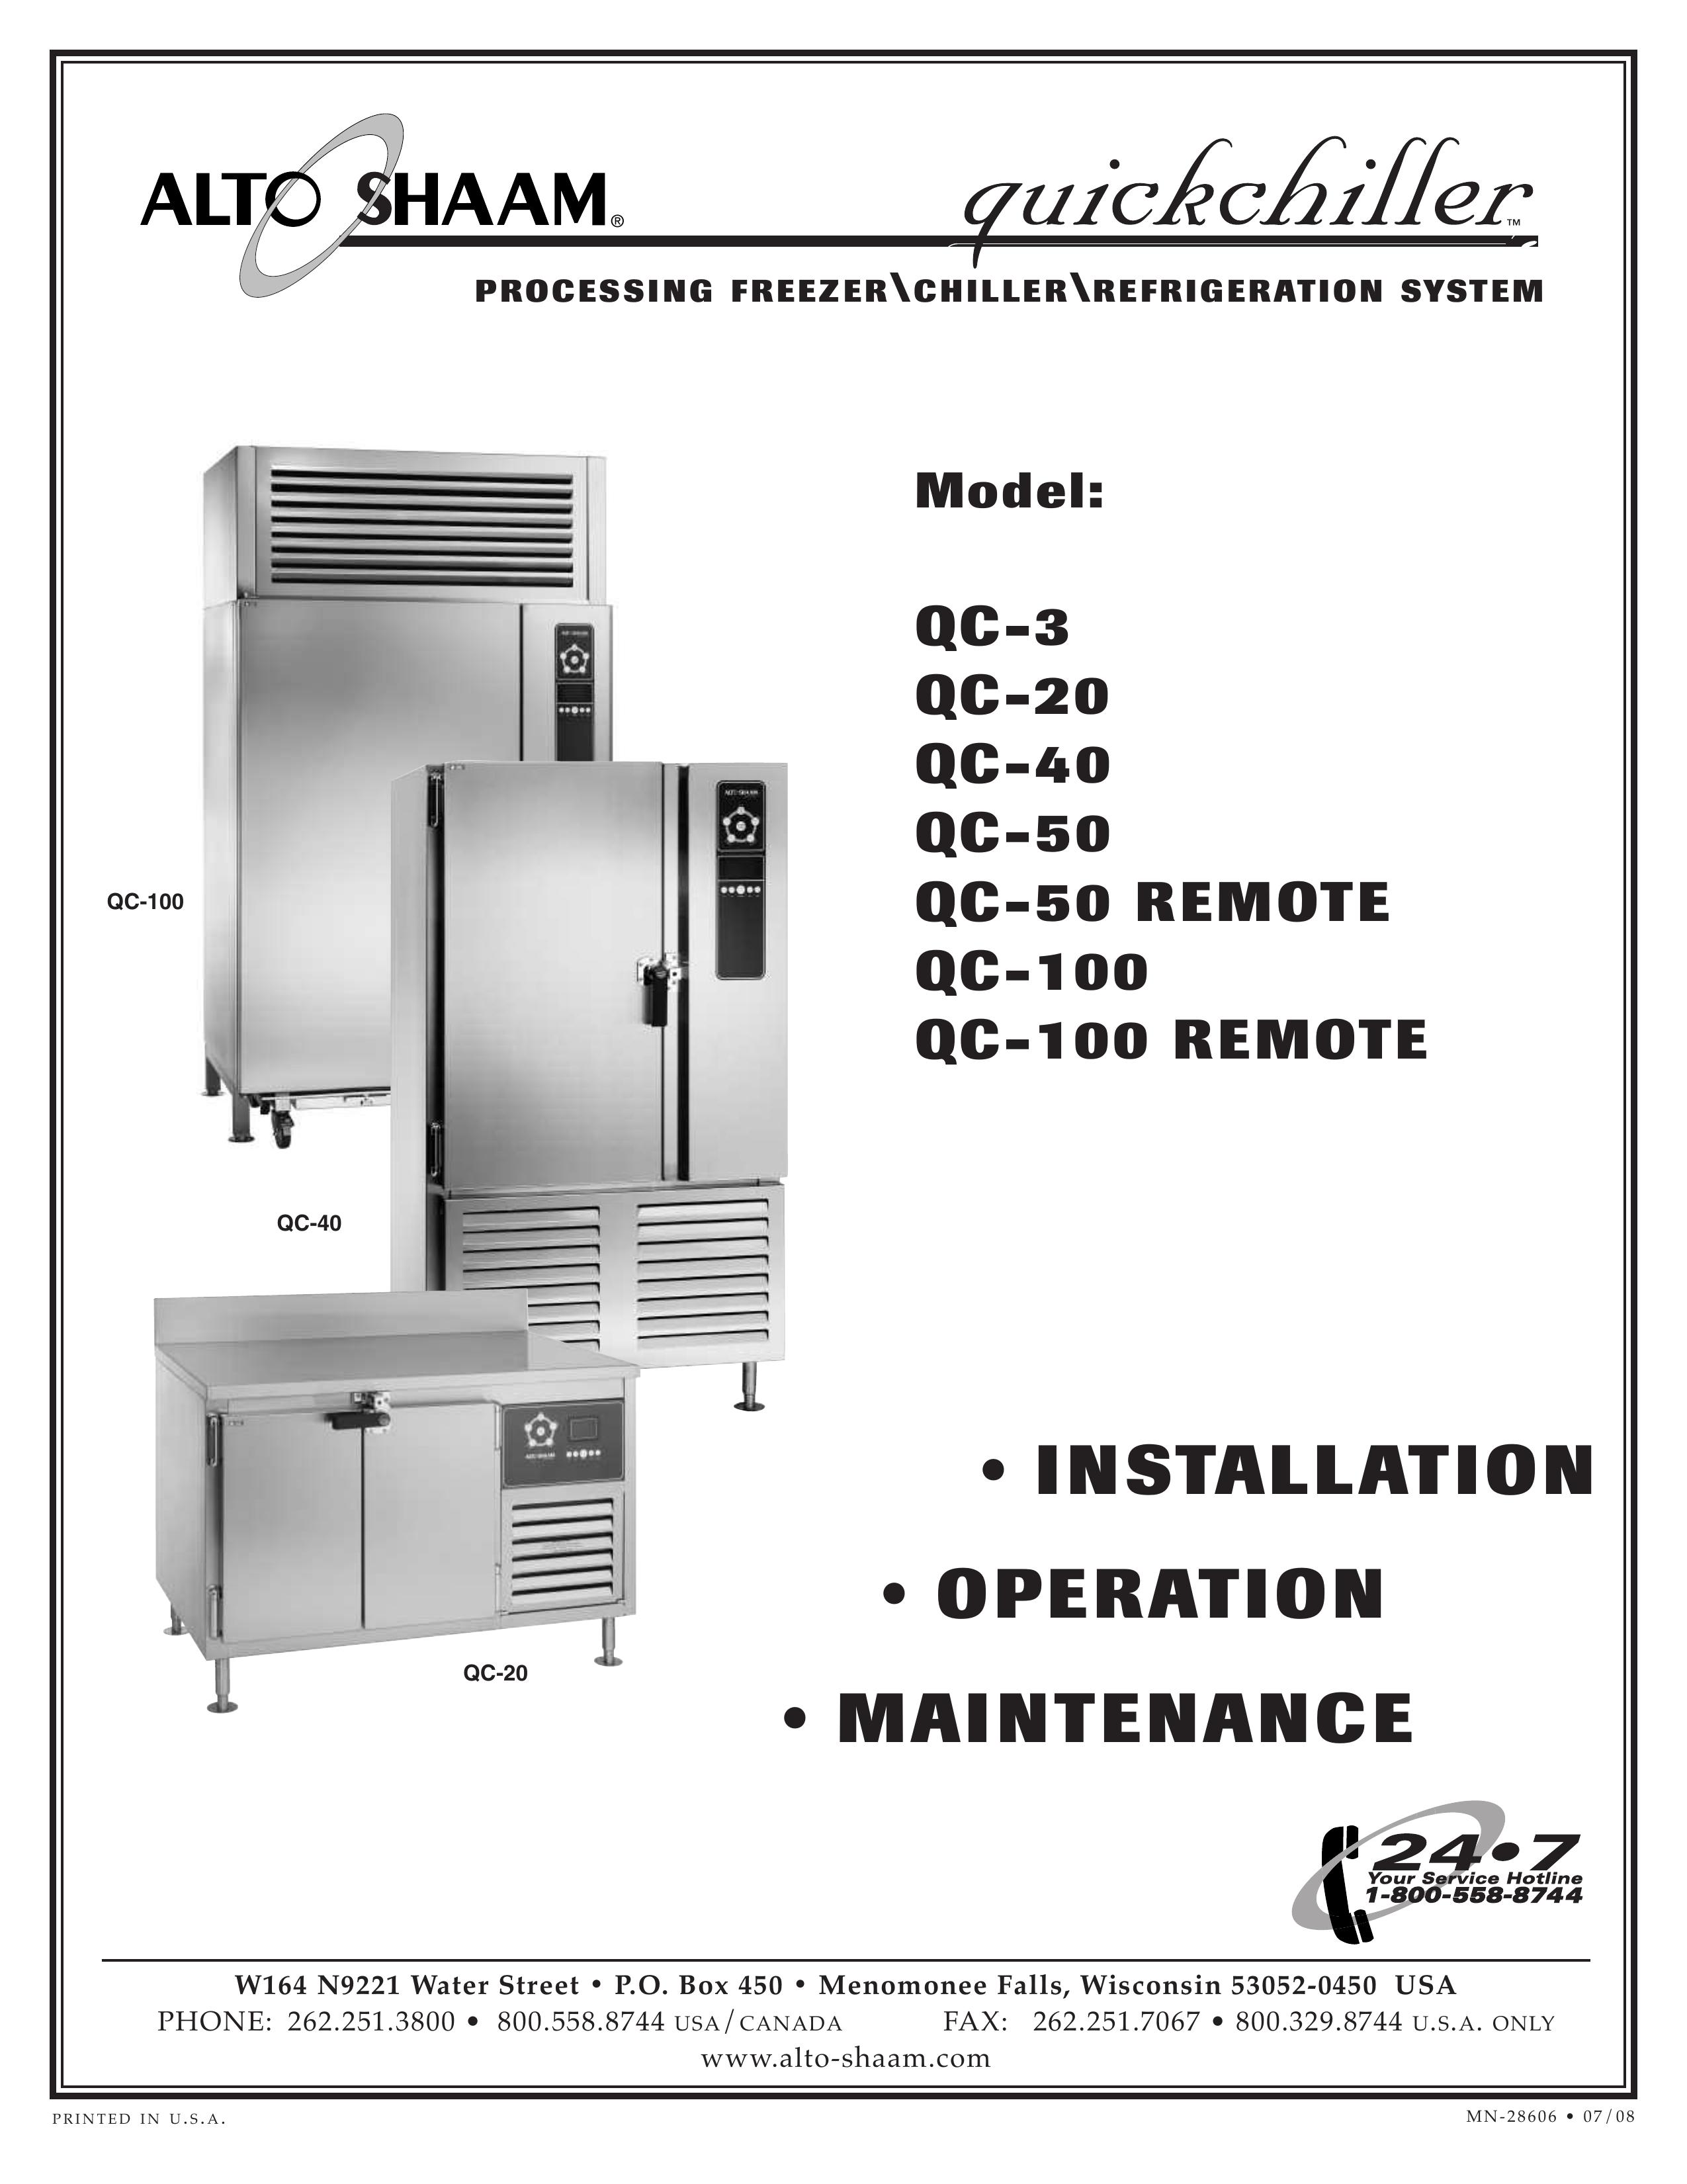 Alto-Shaam QC-40 Refrigerator User Manual